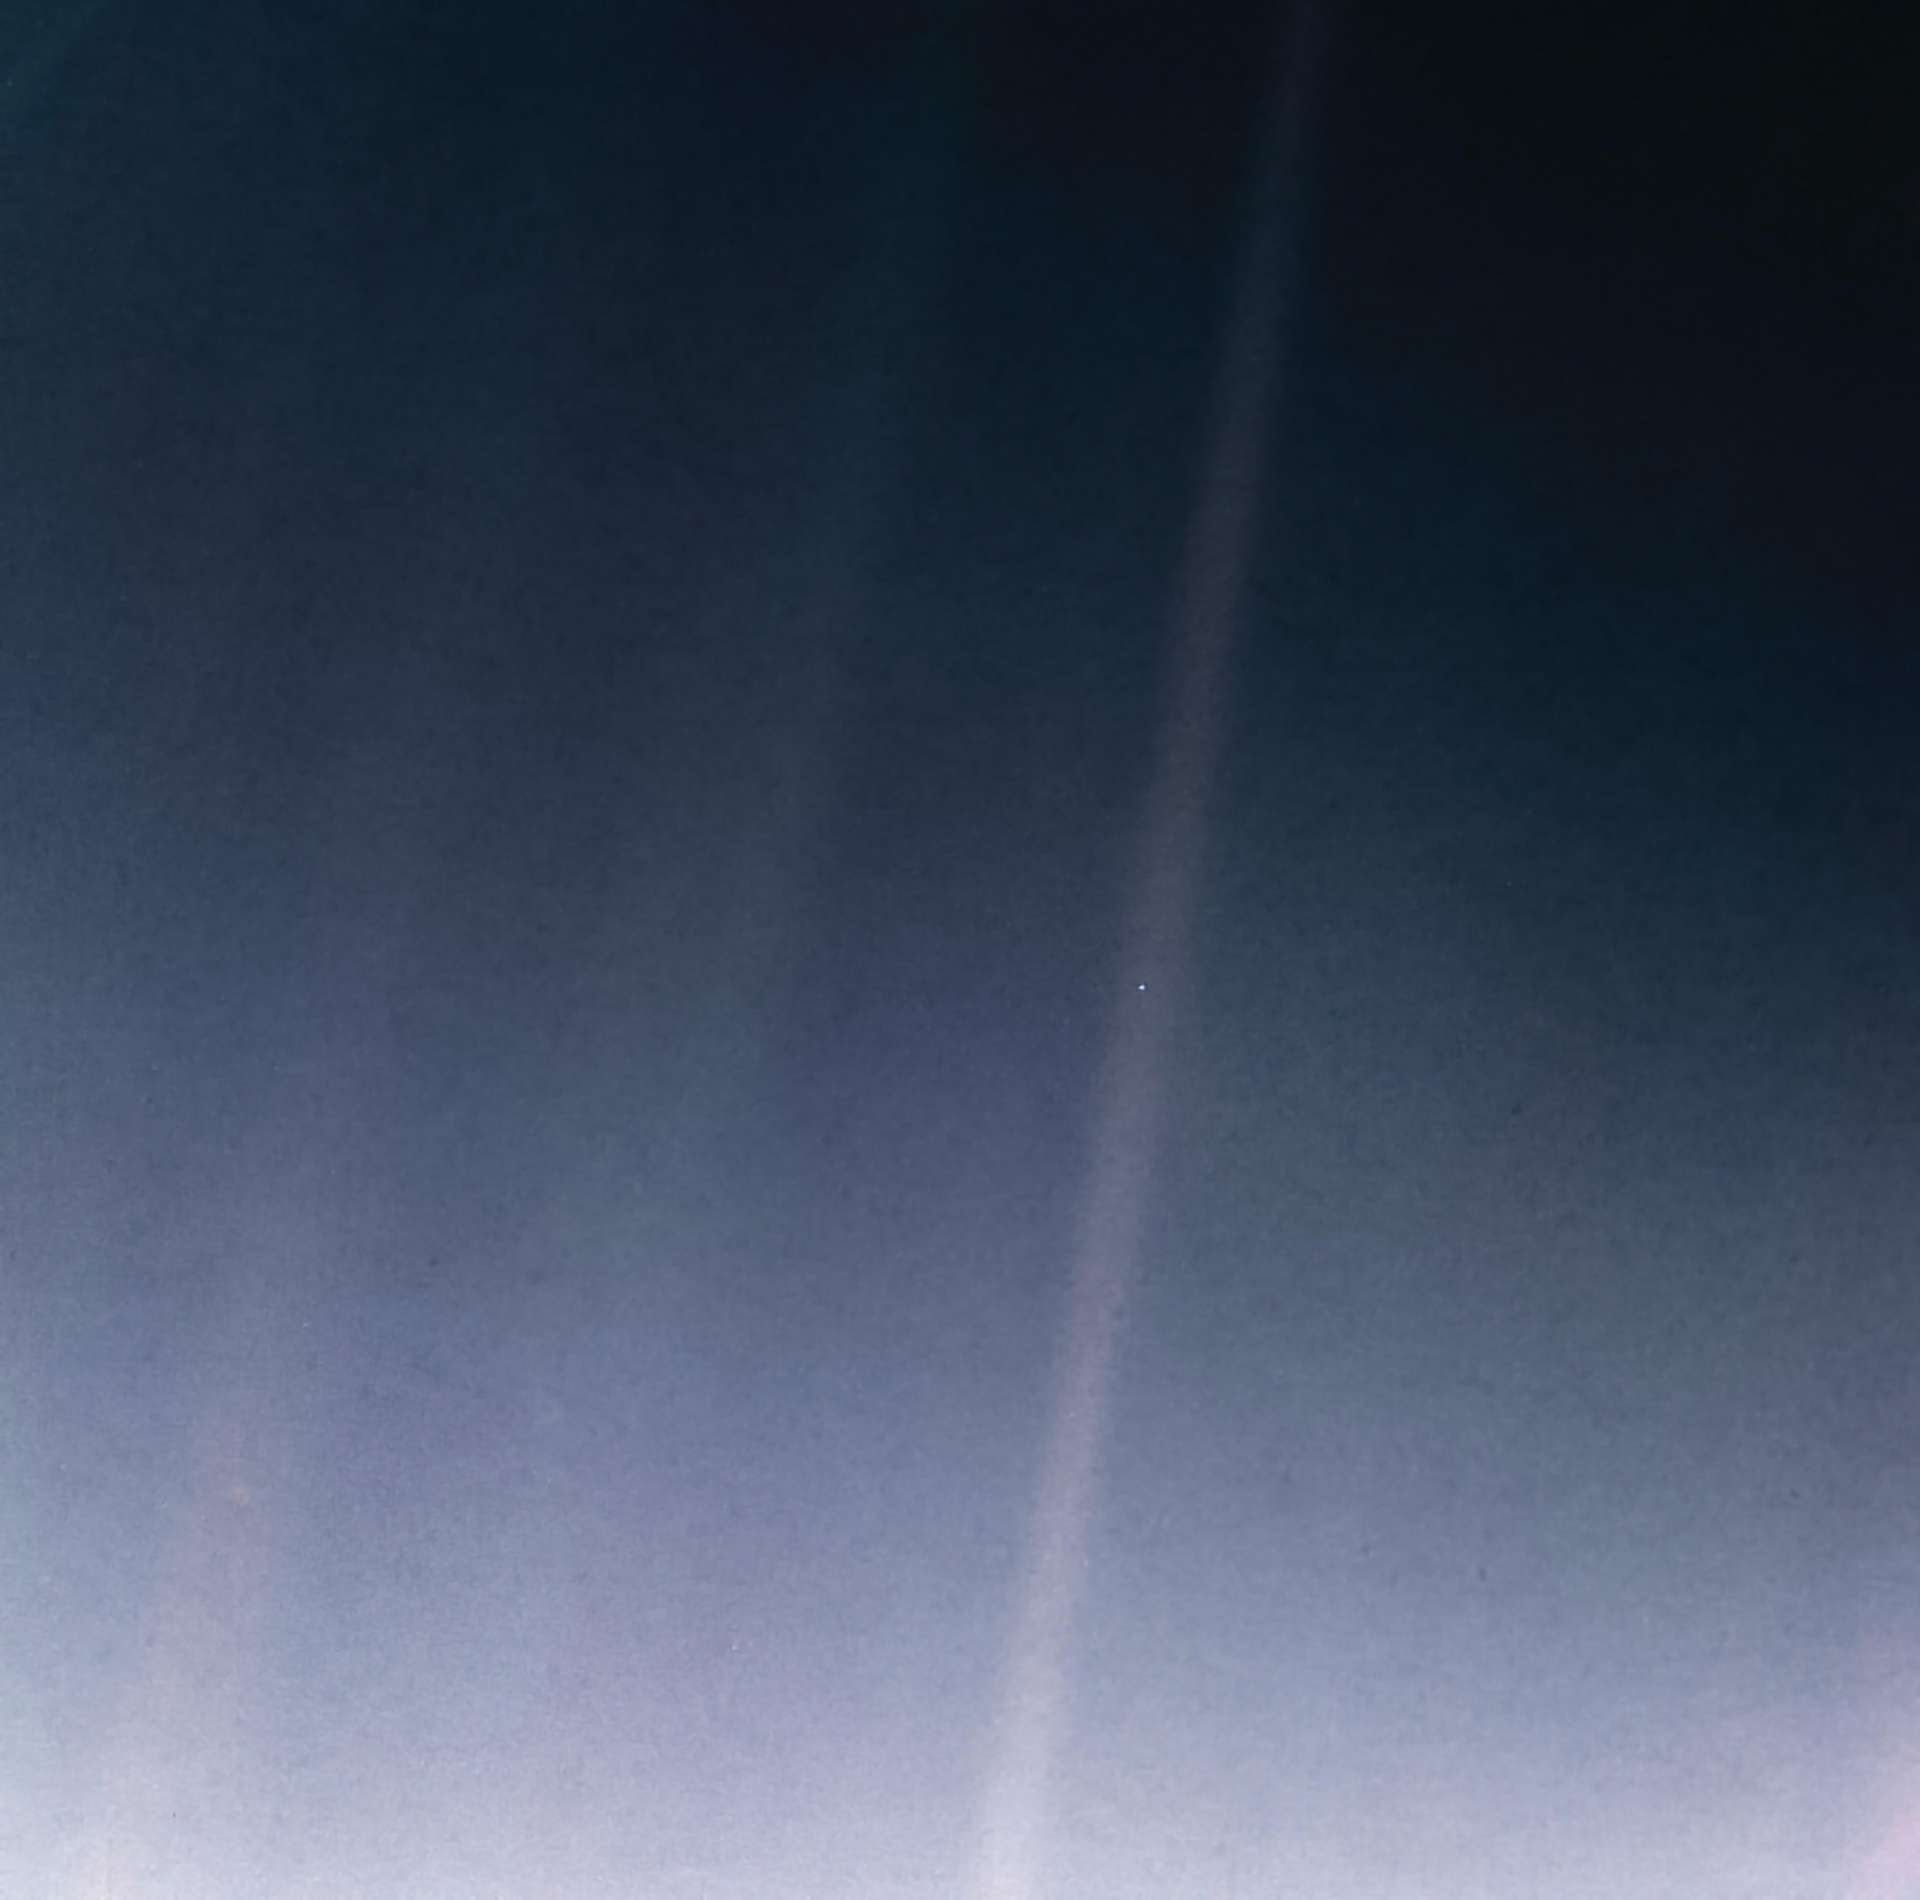 La Terre photographiée par Voyager 1, à six milliards de kilomètres de distance, 34 minutes avant que sa caméra ne soit éteinte pour toujours, le 14 février 1990. Pour ses 30 ans, l'image a bénéficié d'un traitement pour l'améliorer. © Nasa, JPL-Caltech